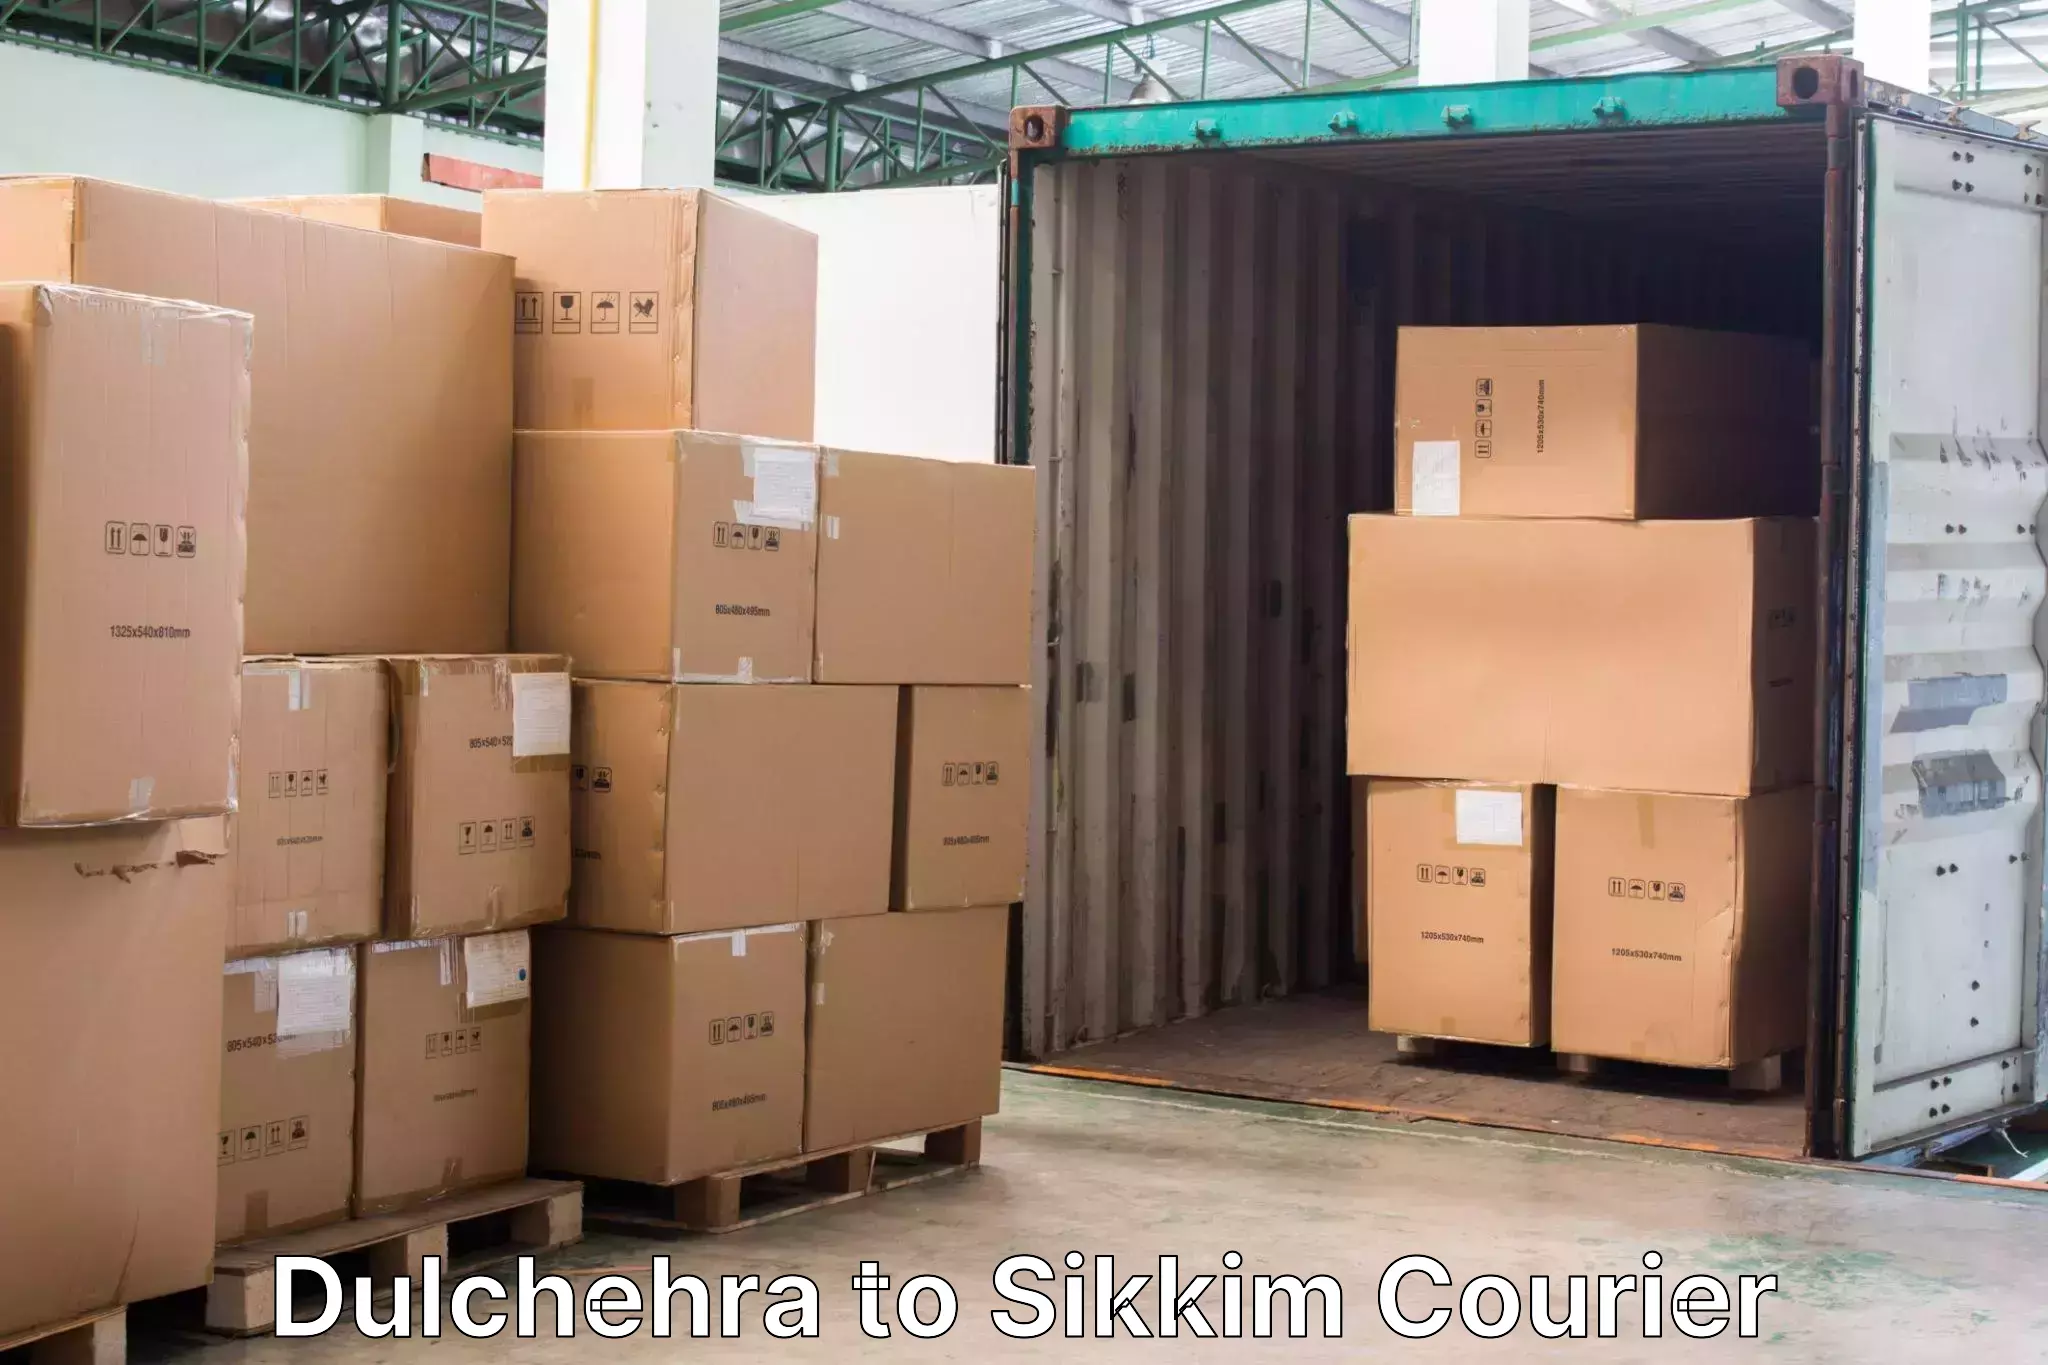 Luggage dispatch service Dulchehra to Sikkim